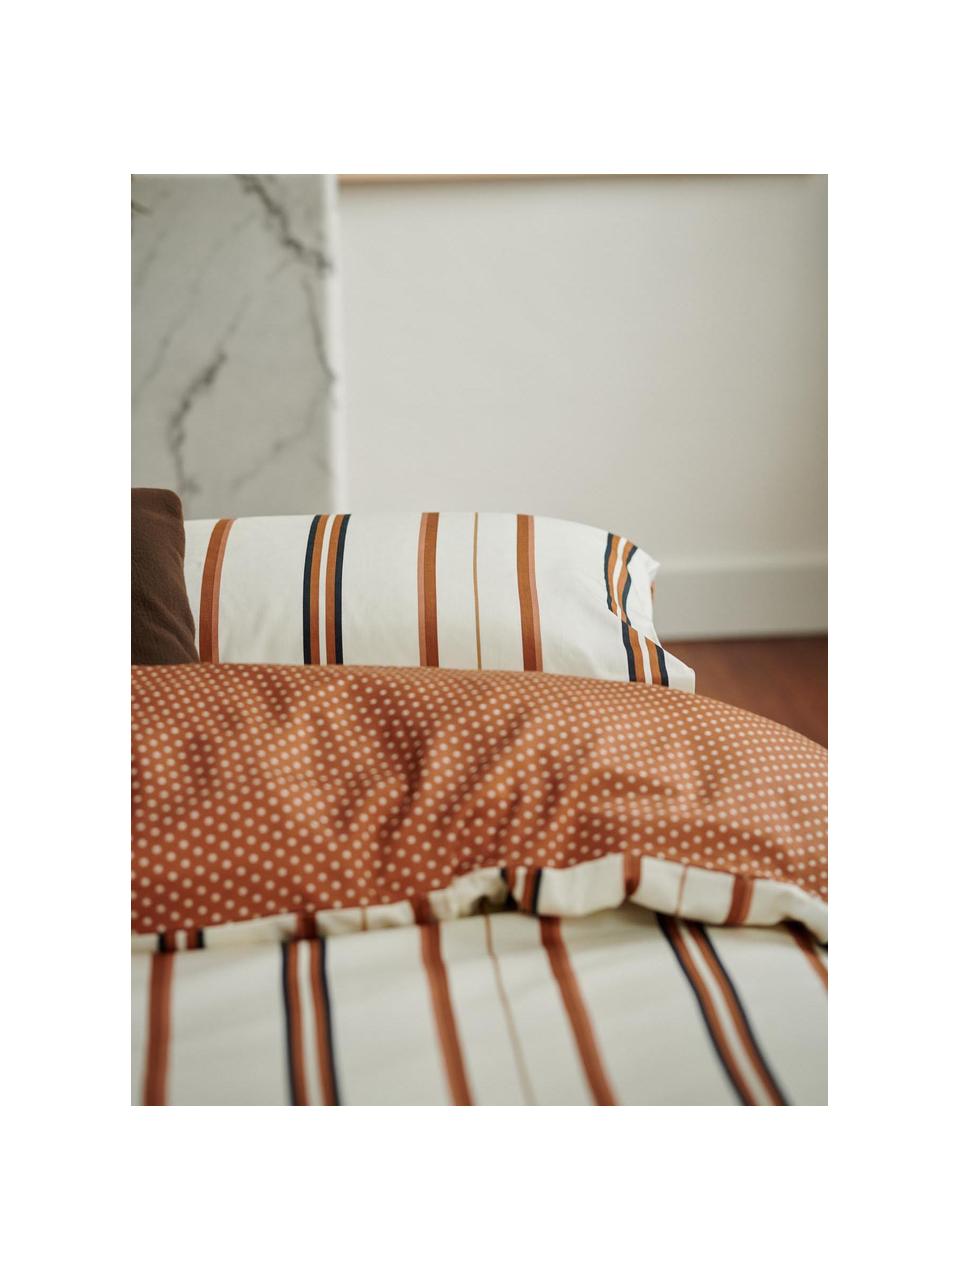 Pościel z satyny bawełnianej Merly, Pomarańczowy, beżowy, 135 x 200 cm + 1 poduszka 80 x 80 cm